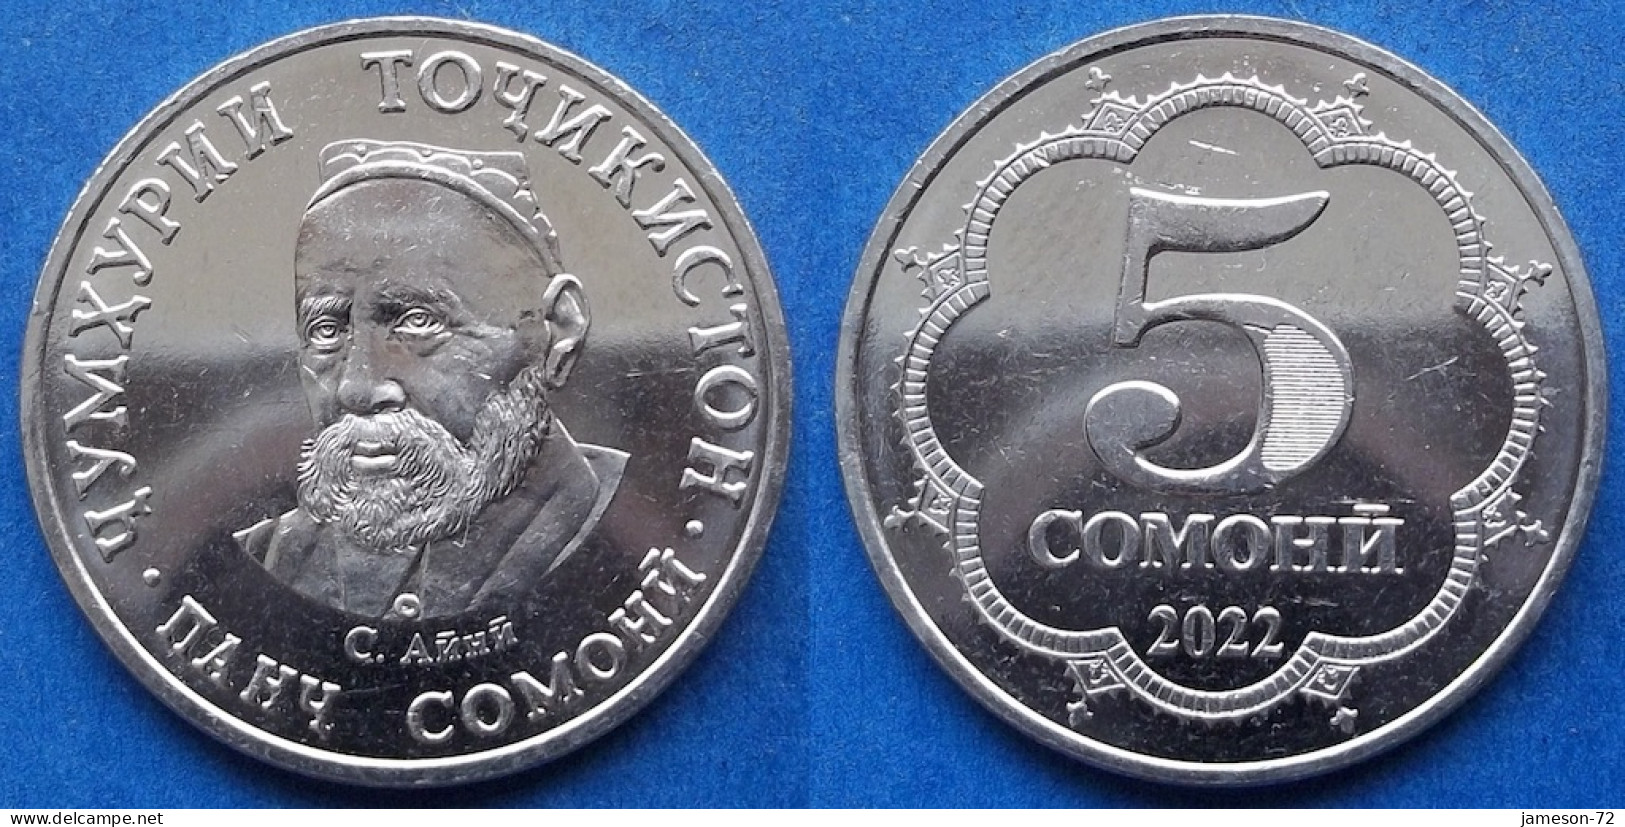 TAJIKISTAN - 5 Somoni 2022 "Sadriddin Ayni" KM# 58 Independent Republic (1991) - Edelweiss Coins - Tadzjikistan